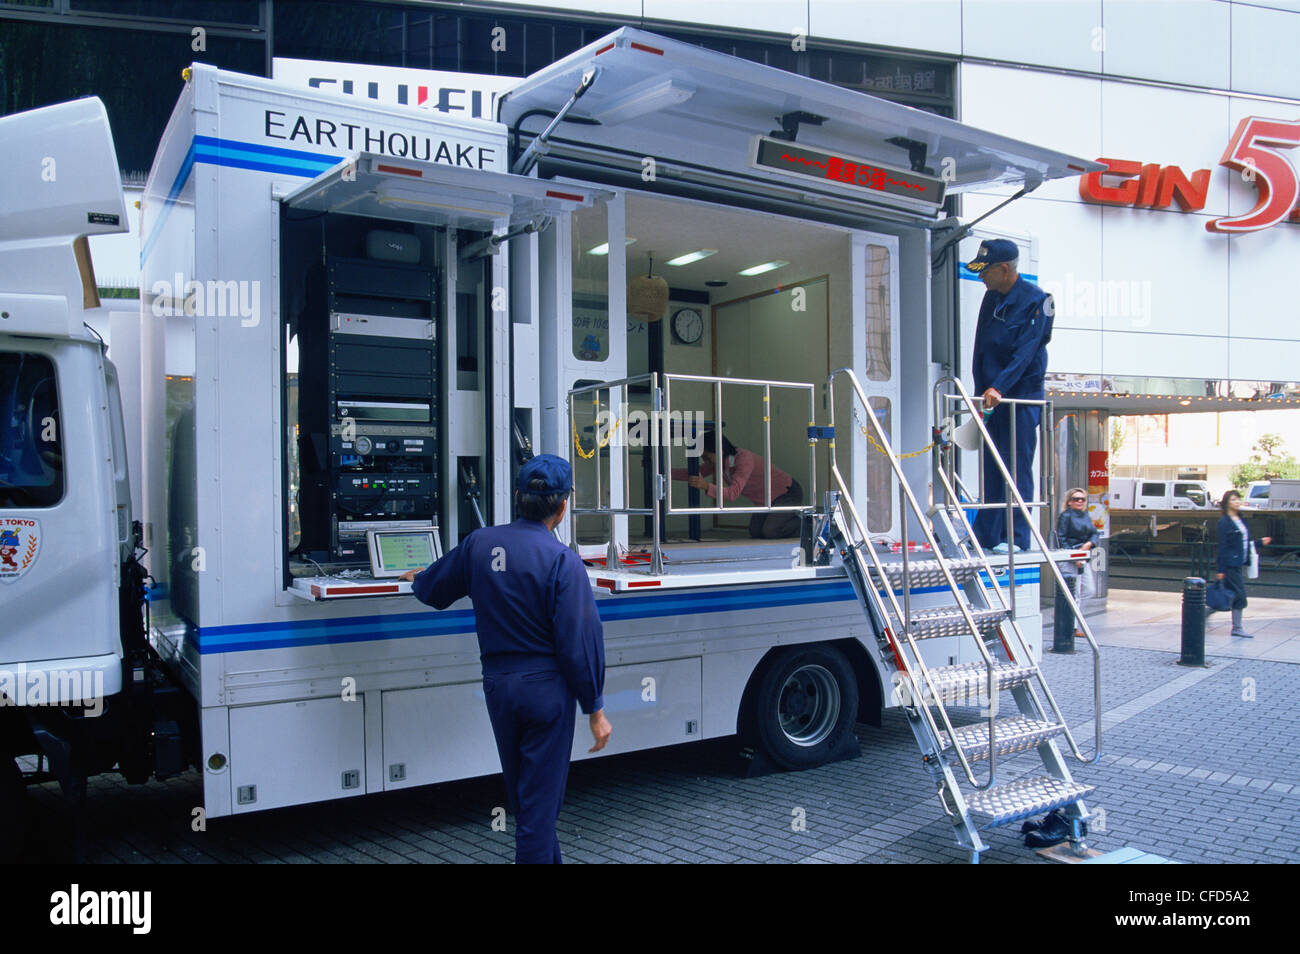 Japan, Tokio, Ginza, Erdbeben-Simulator Truck für öffentliche Erdbeben Grundlagentraining Stockfoto